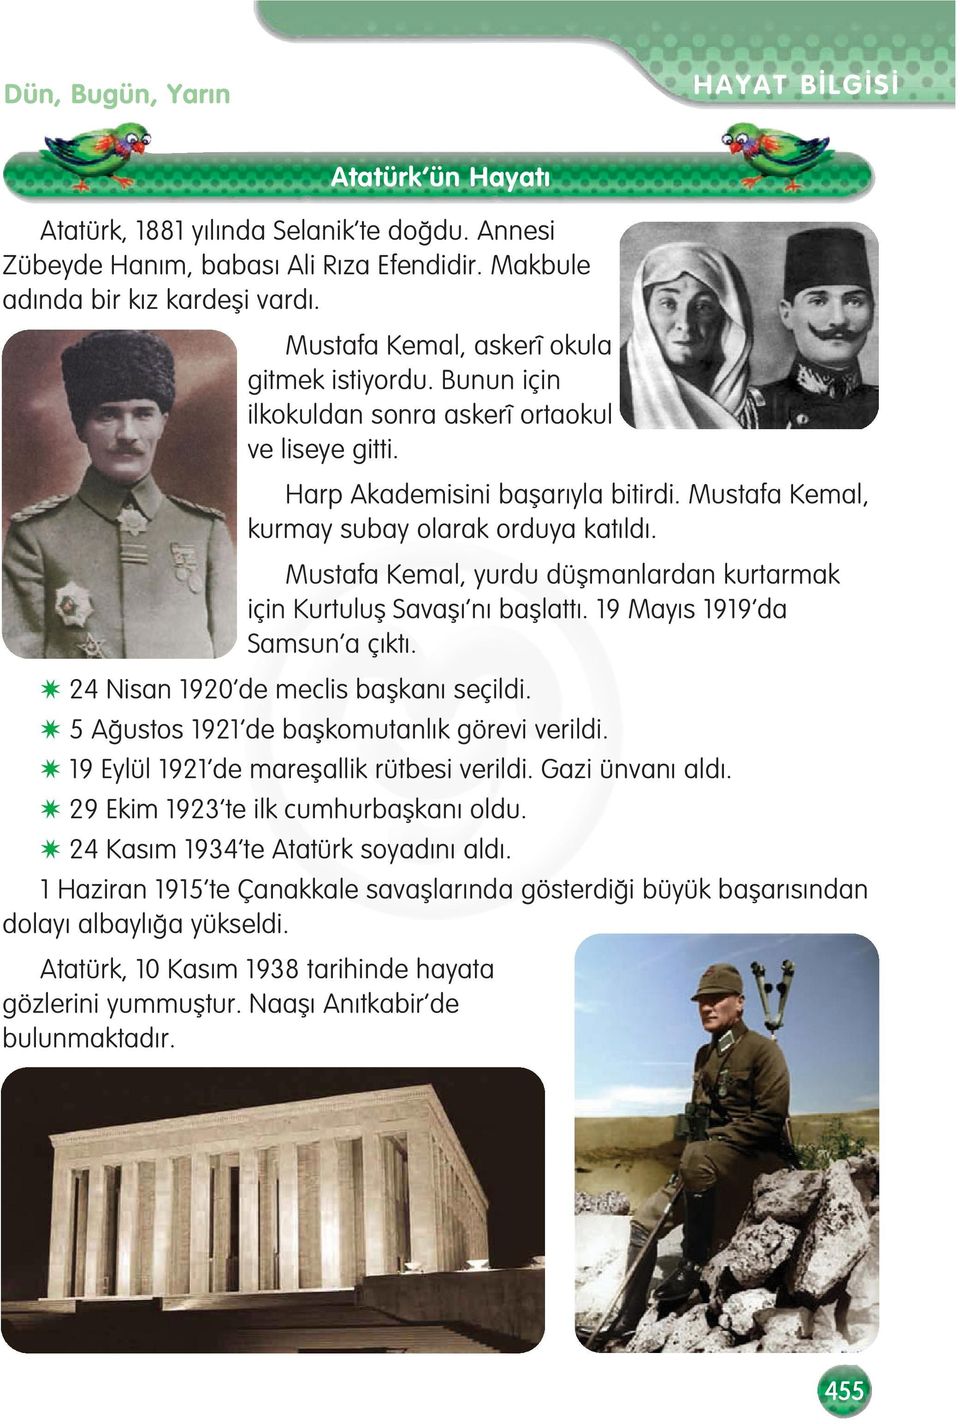 Mustafa Kemal, yurdu düflmanlardan kurtarmak için Kurtulufl Savafl n bafllatt. 19 May s 1919 da Samsun a ç kt. 24 Nisan 1920 de meclis baflkan seçildi. 5 A ustos 1921 de baflkomutanl k görevi verildi.